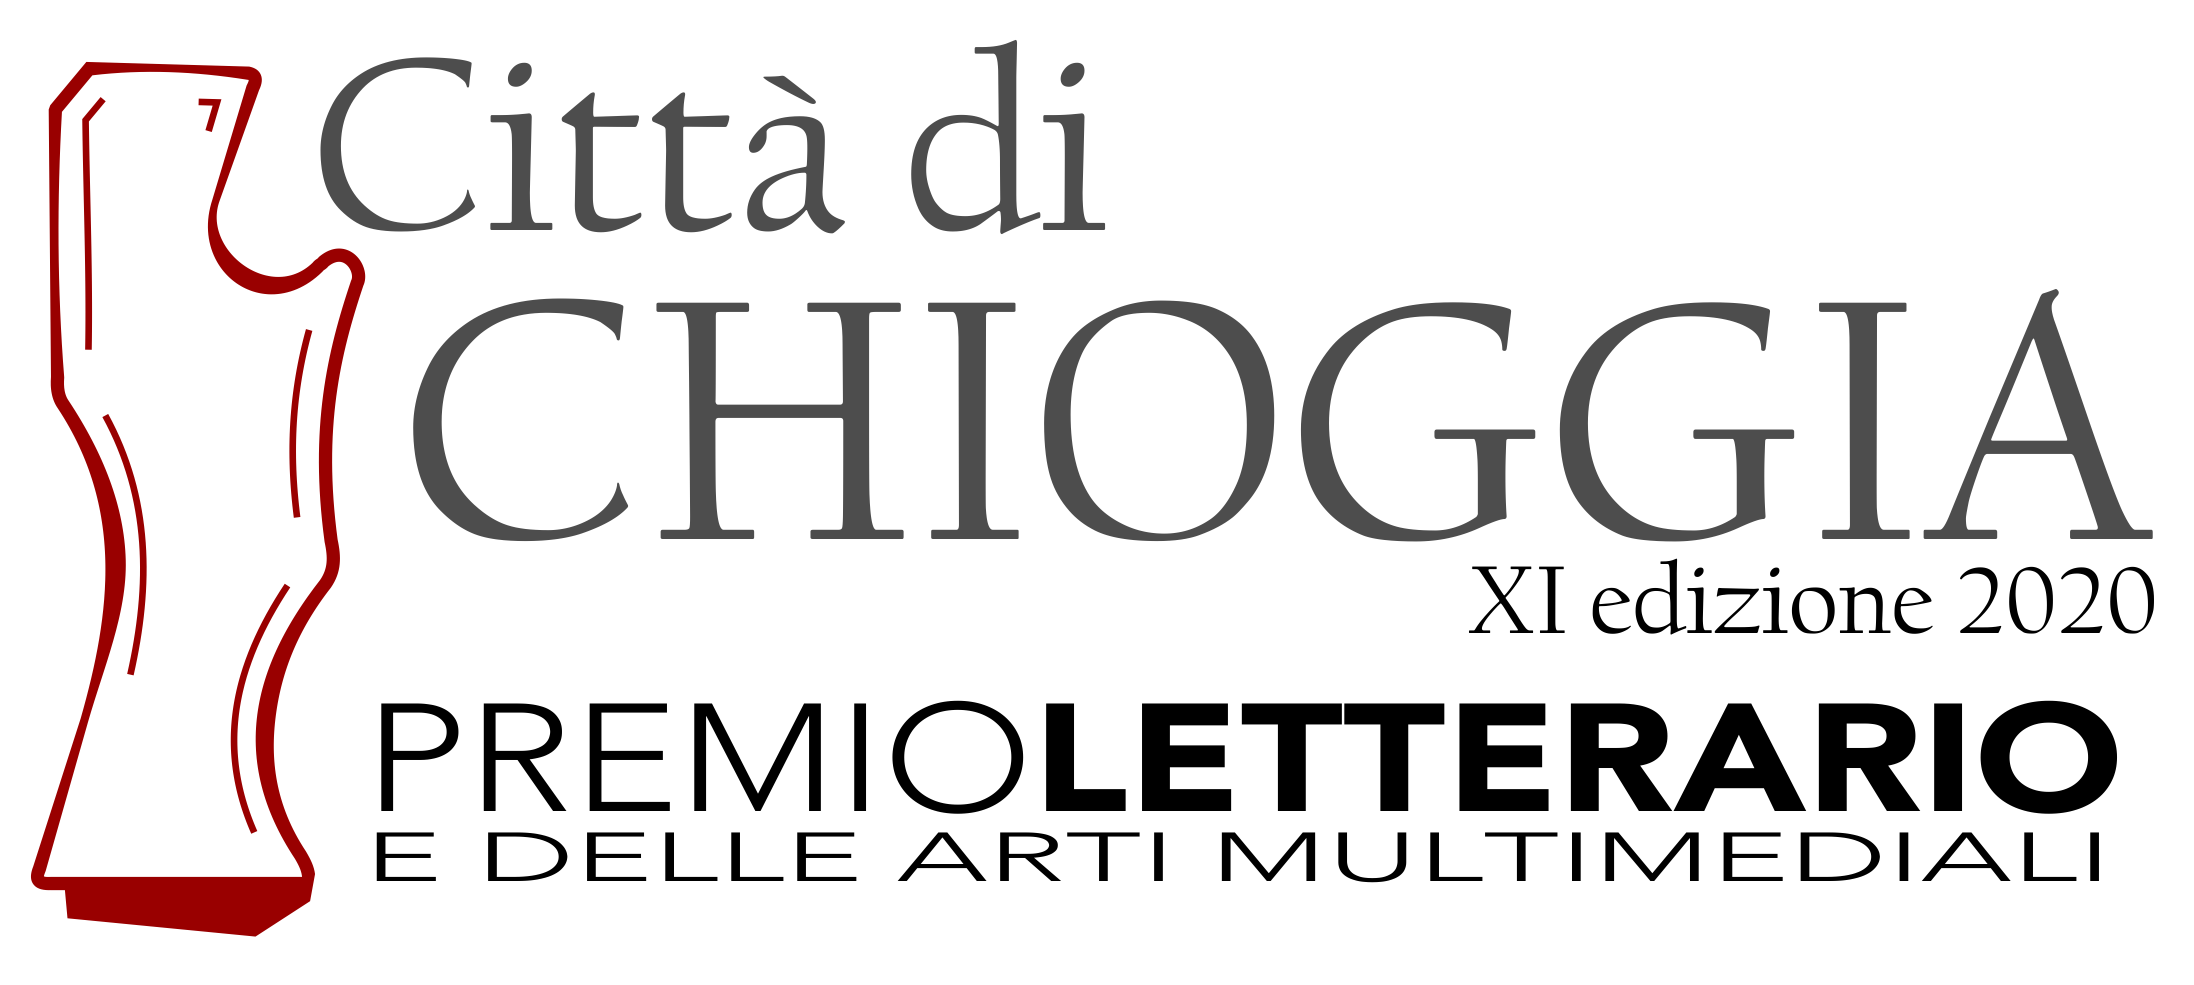 Banco San Marco Chioggia / Eventi E Appuntamenti A Chioggia E Sottomarina 2015